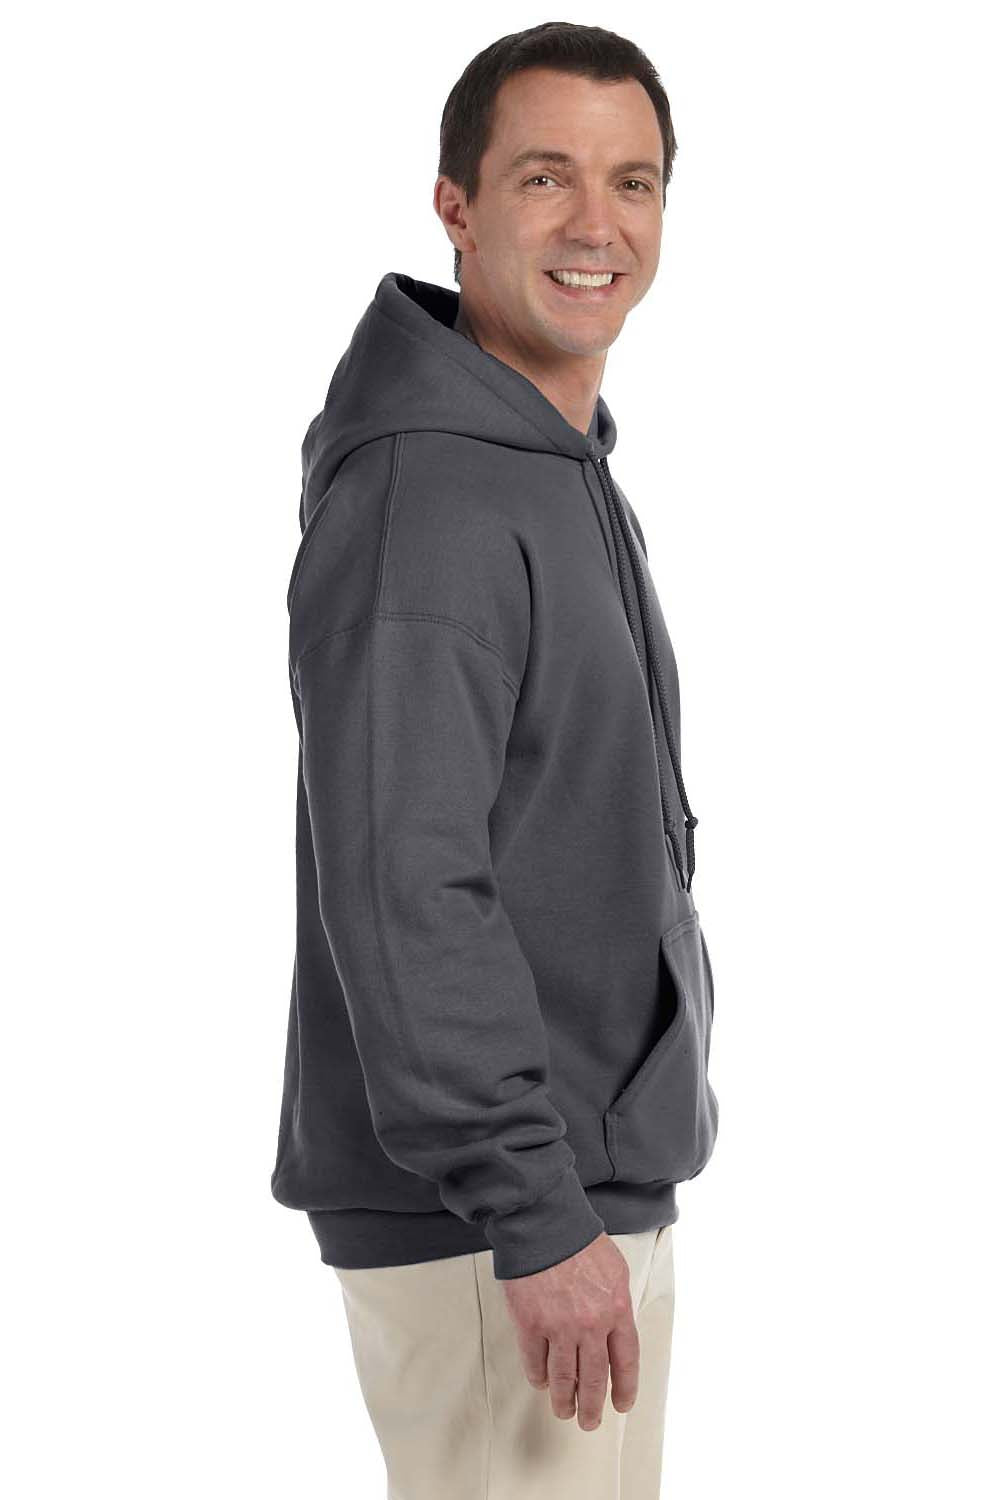 Gildan G125 Mens DryBlend Moisture Wicking Hooded Sweatshirt Hoodie Charcoal Grey Side